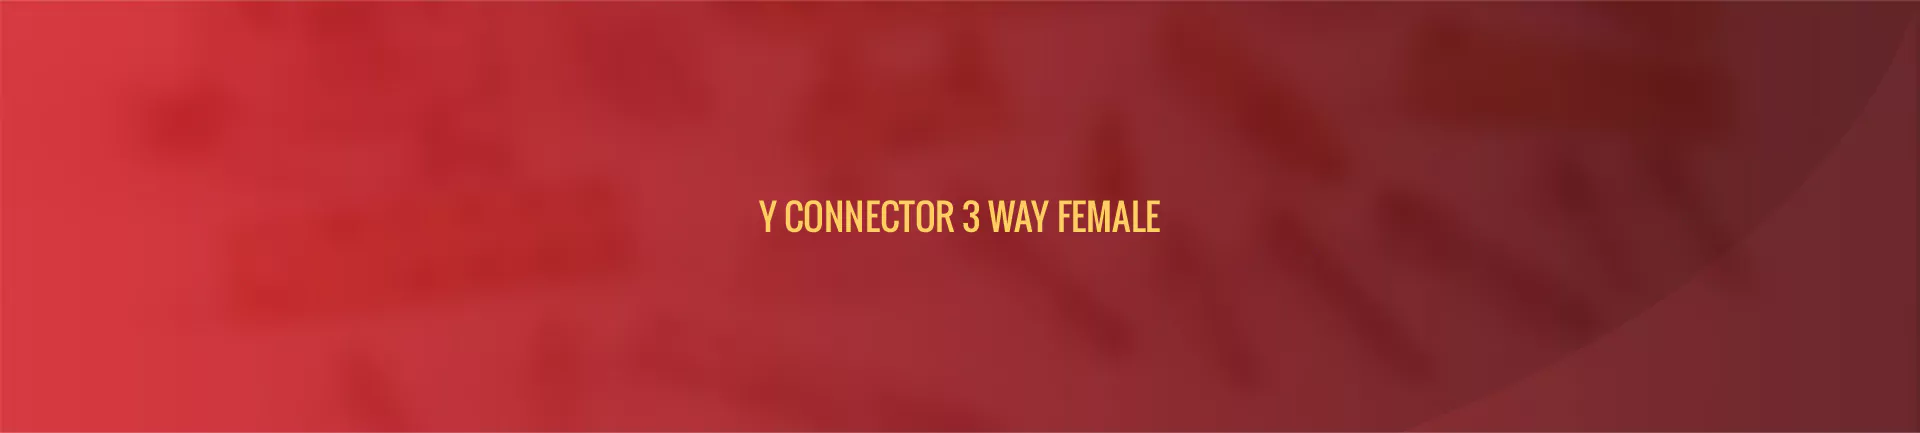 y_connector_3_way-banner